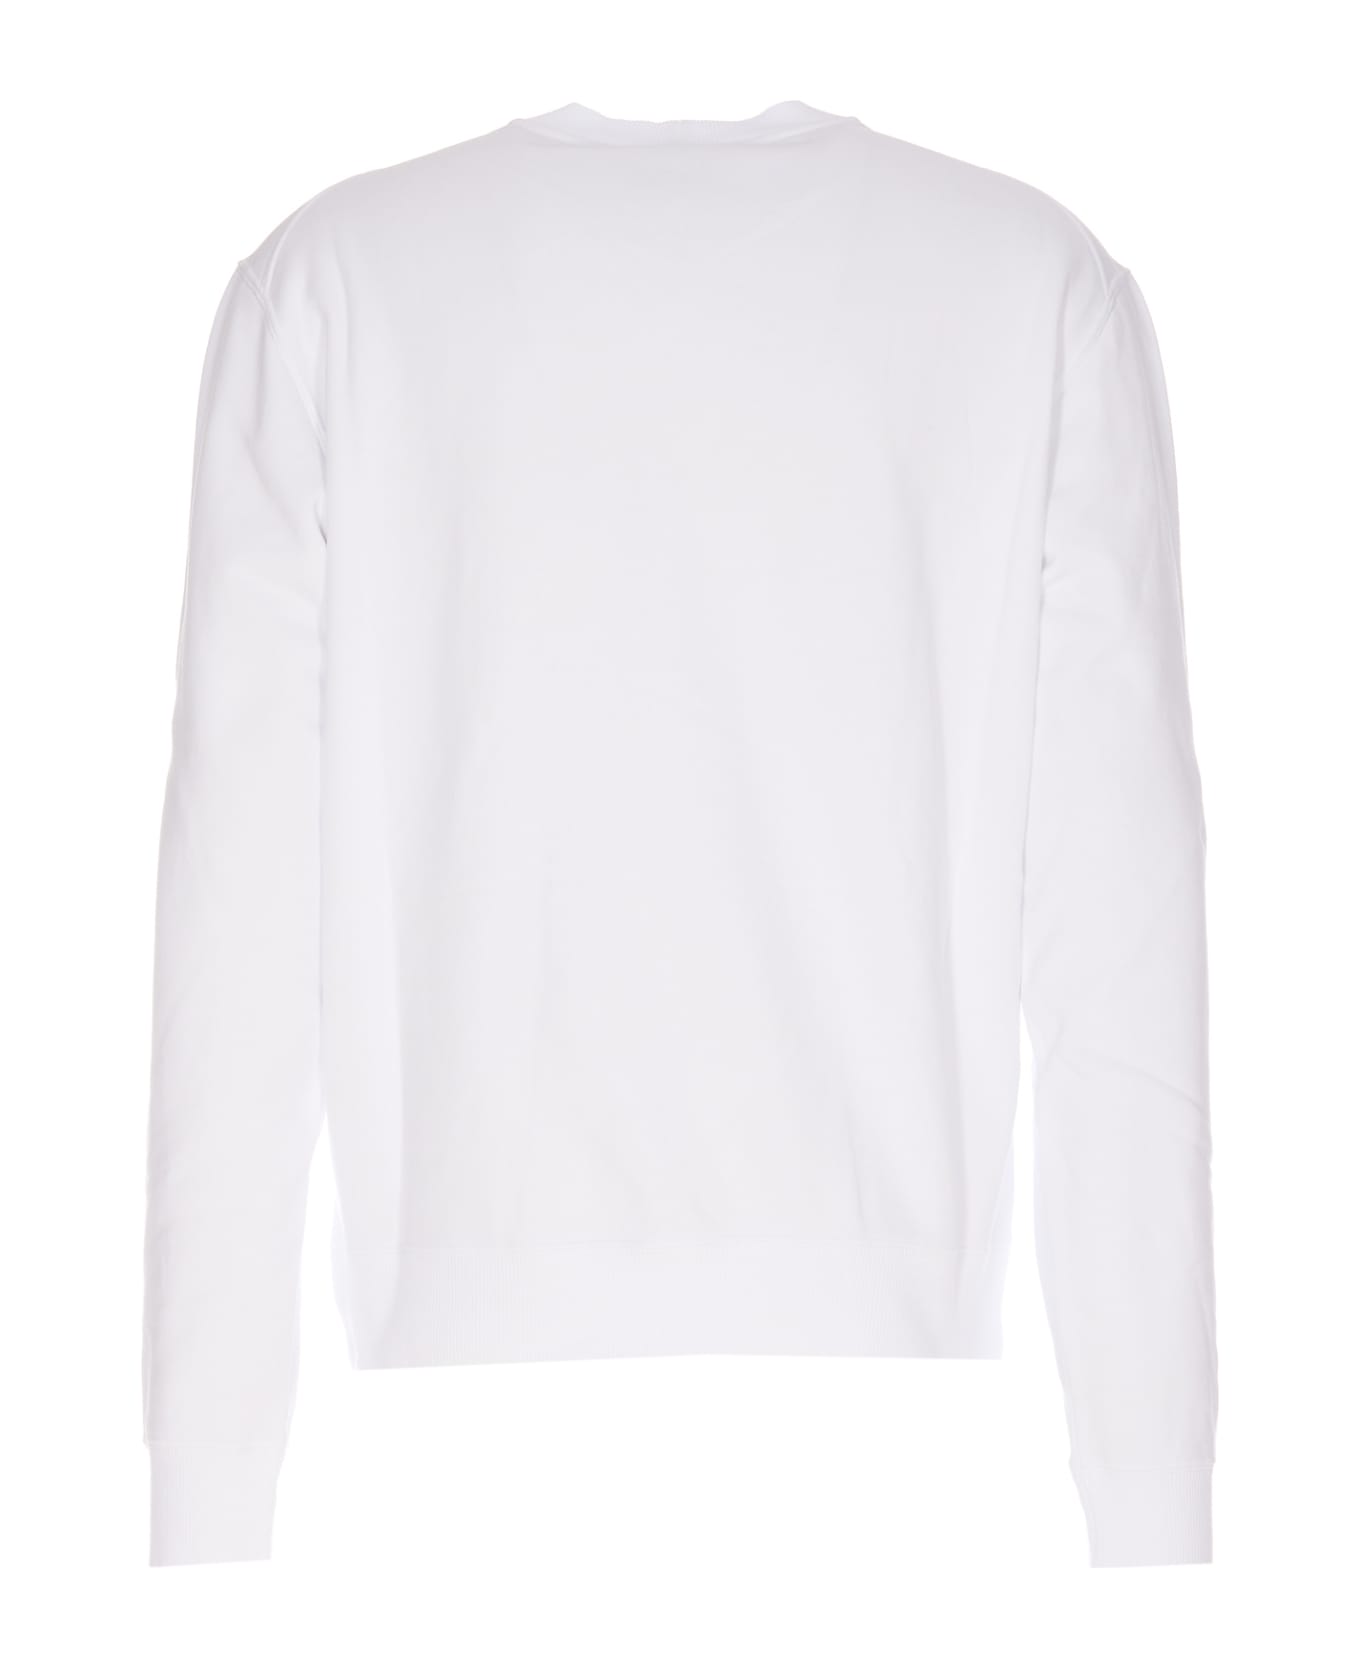 Lanvin Embroidered Sweatshirt - White